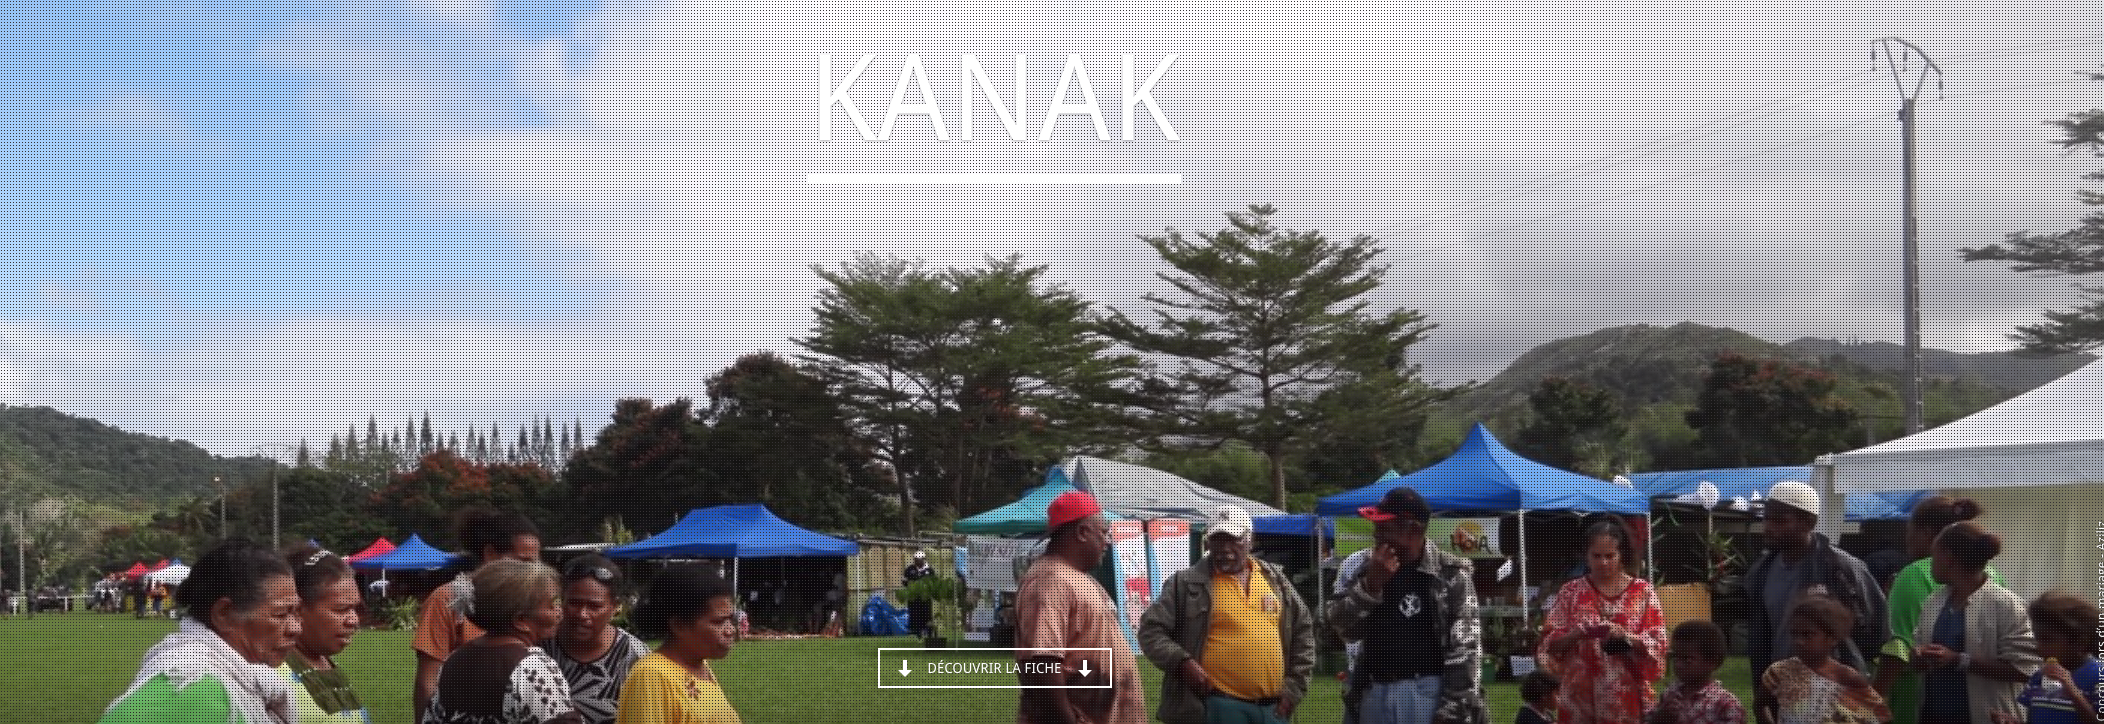 Les films de BED (Bretagne et Diversité) : focus sur les Kanaks